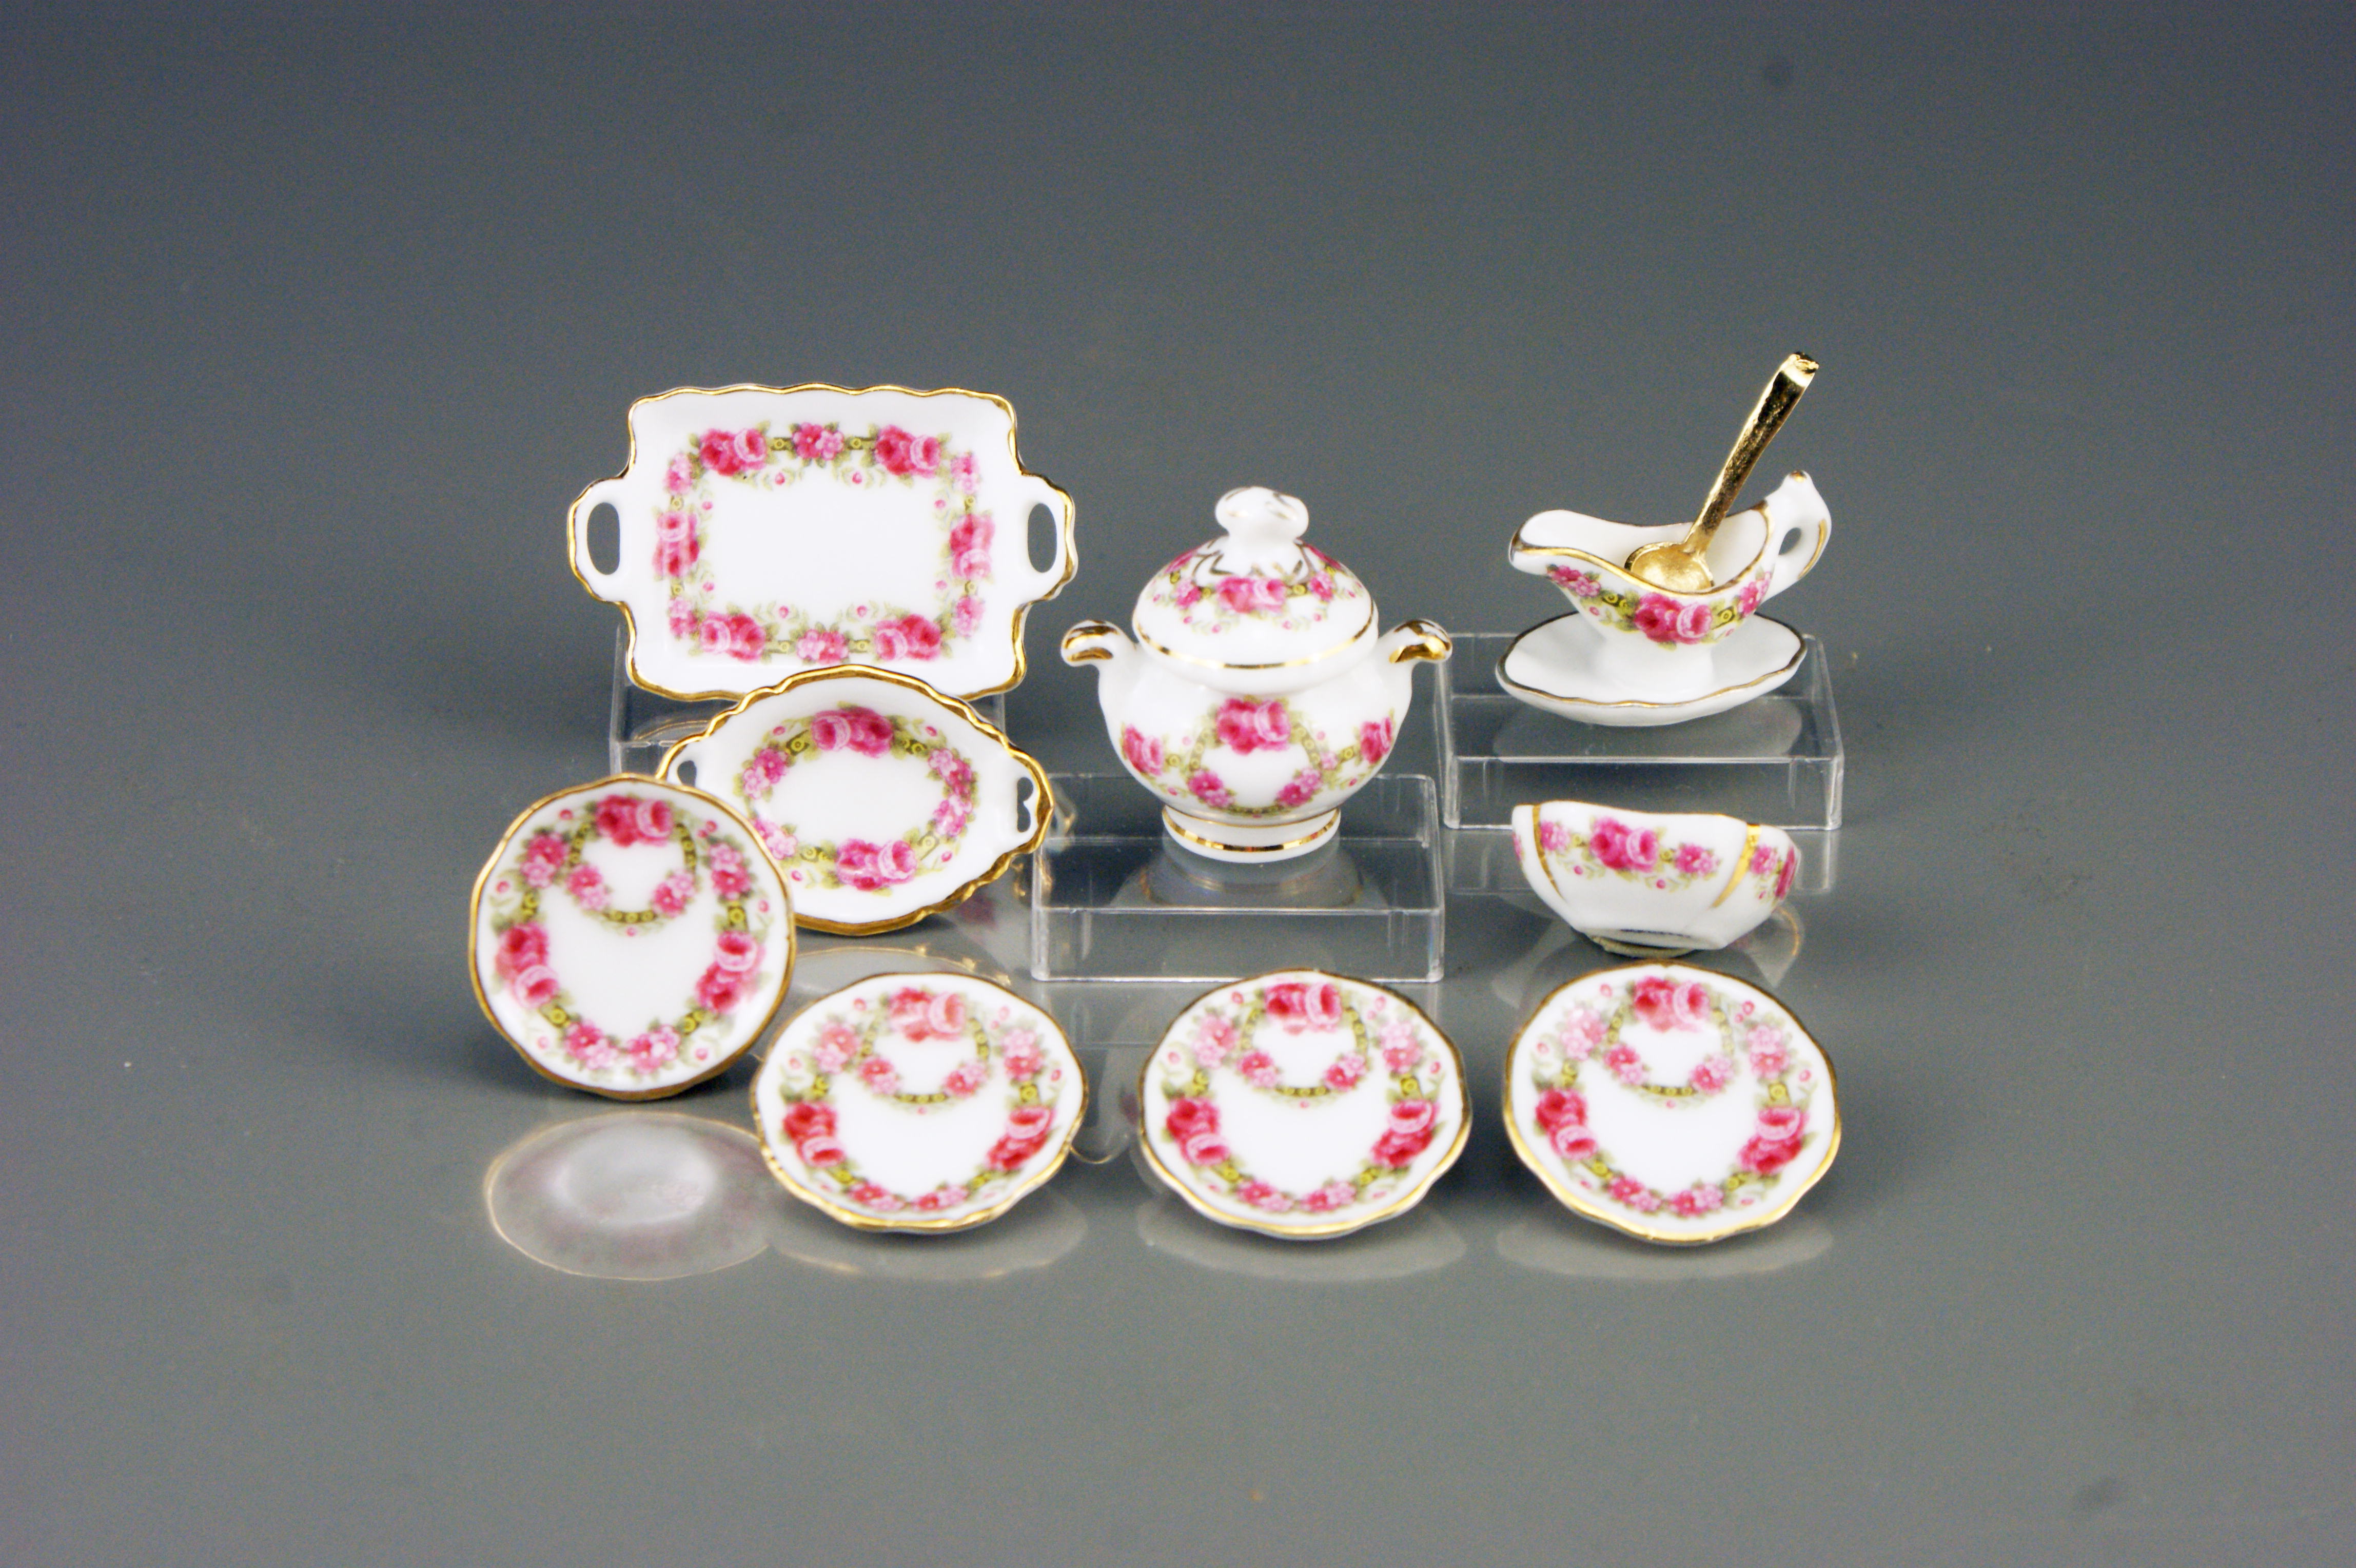 Dollhouse Miniature Gold Decor Dessert Set for 4 by Reutter Porcelain 